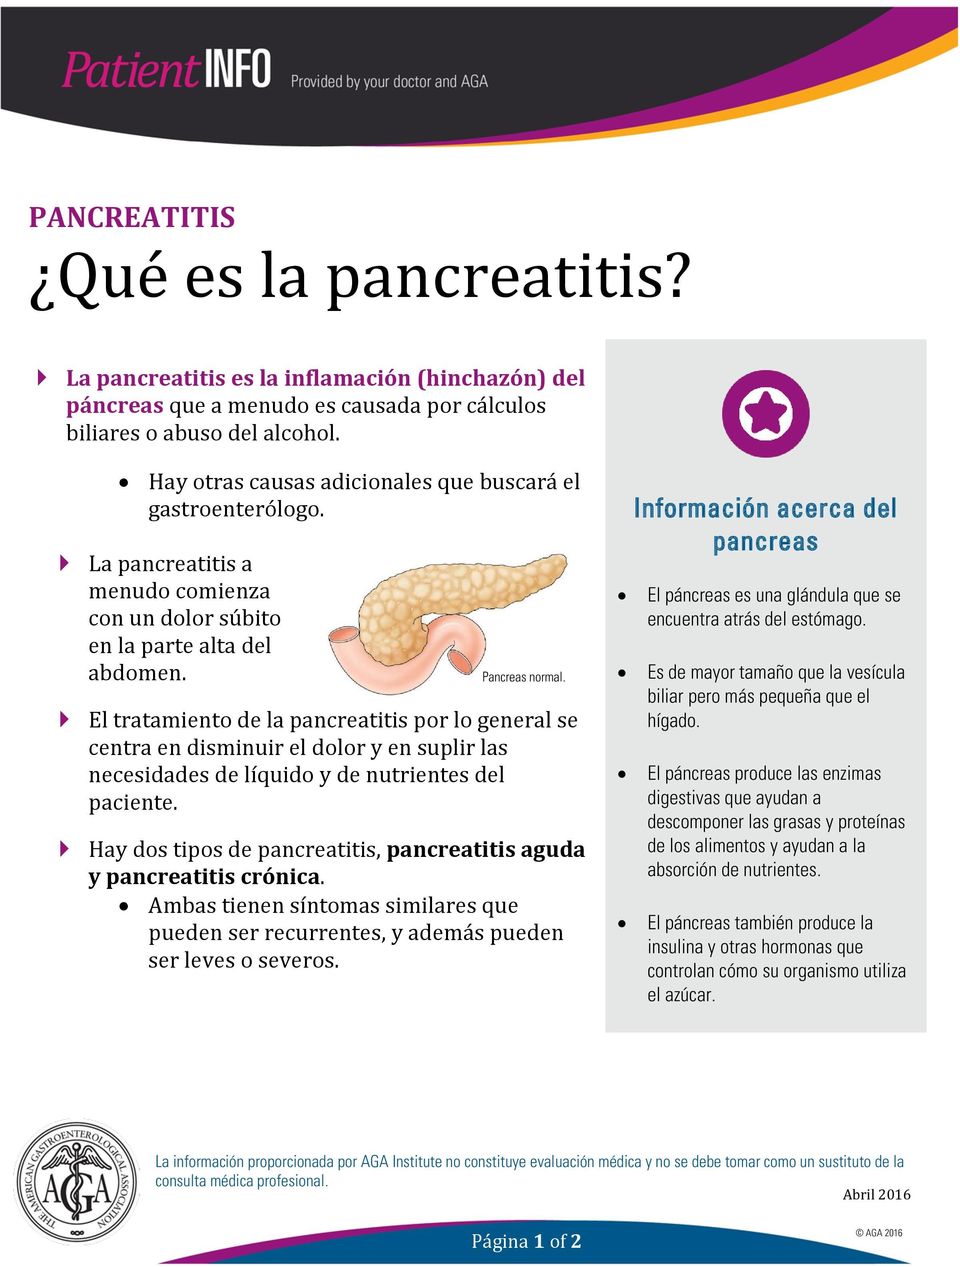 El tratamiento de la pancreatitis por lo general se centra en disminuir el dolor y en suplir las necesidades de líquido y de nutrientes del paciente.